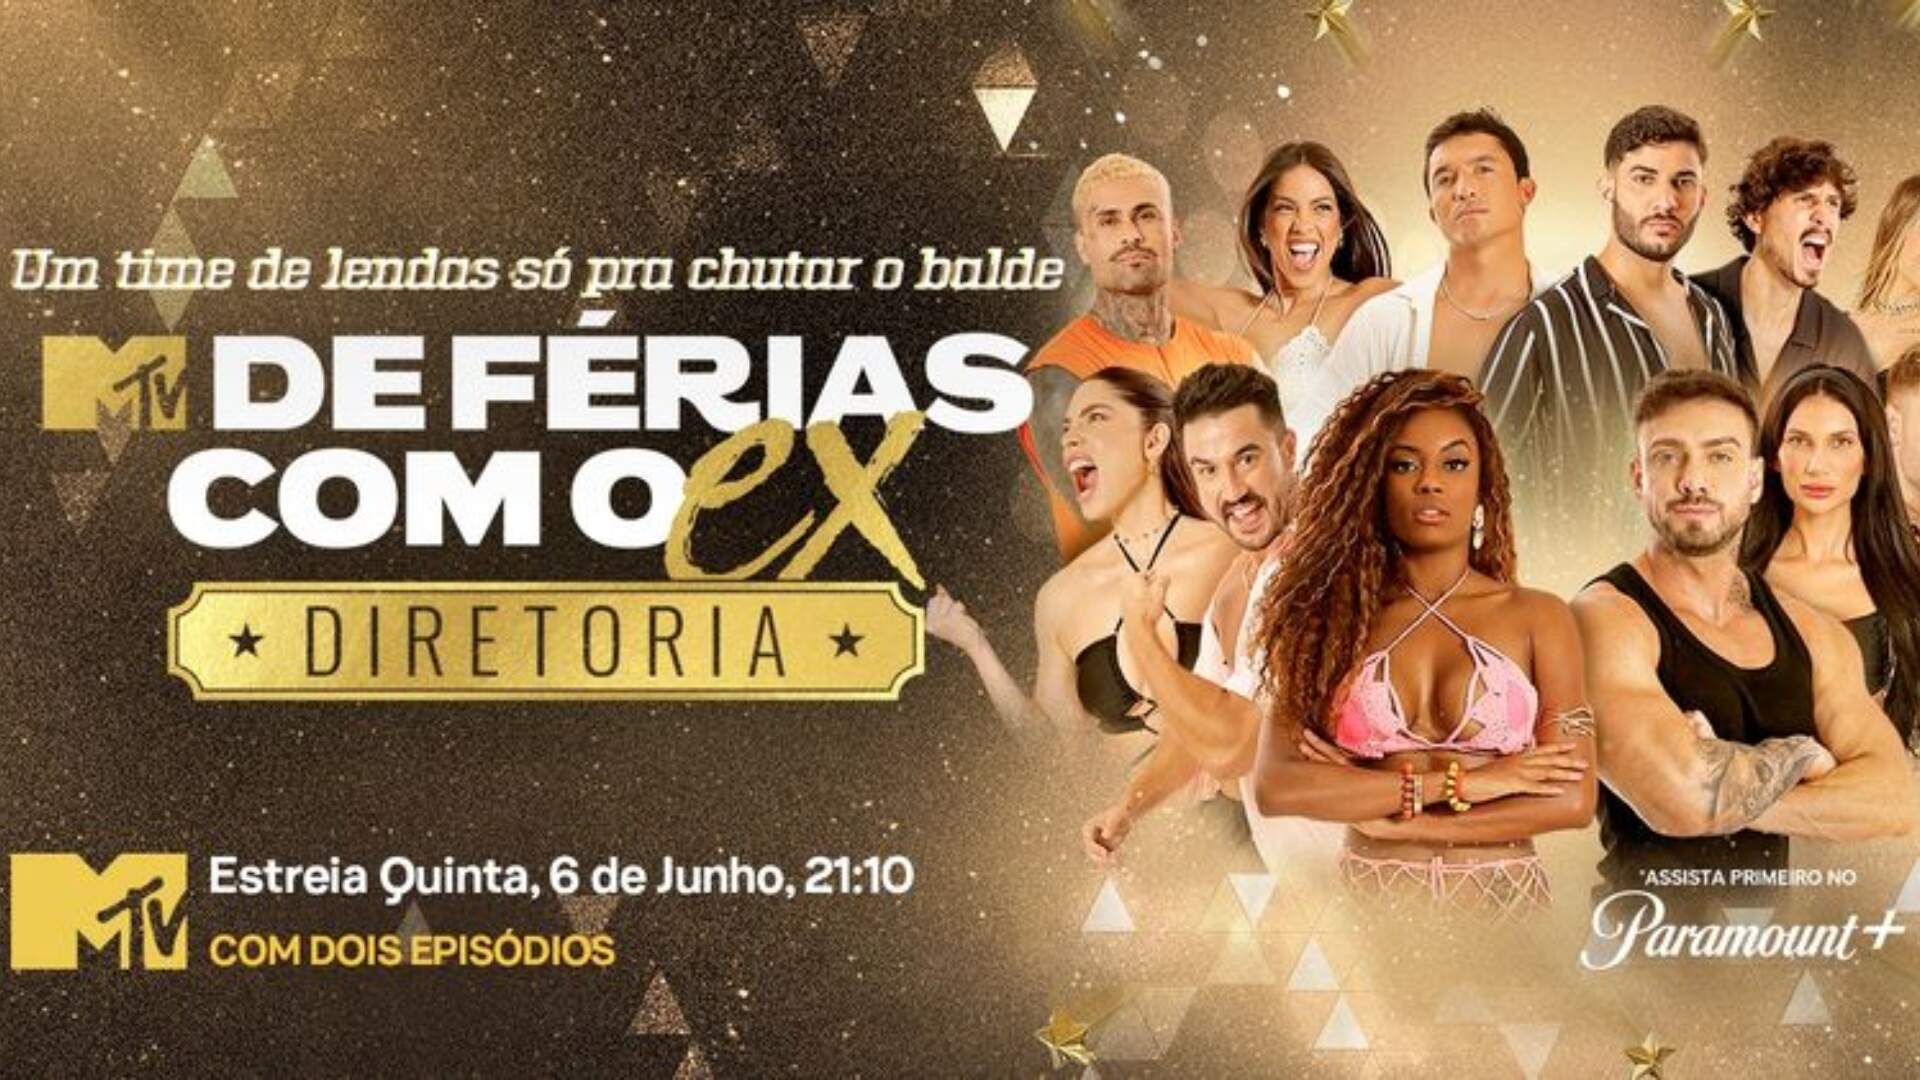 ‘De Férias com o Ex’ toma decisão inusitada e garante prêmio em dinheiro pela primeira vez na história - Metropolitana FM